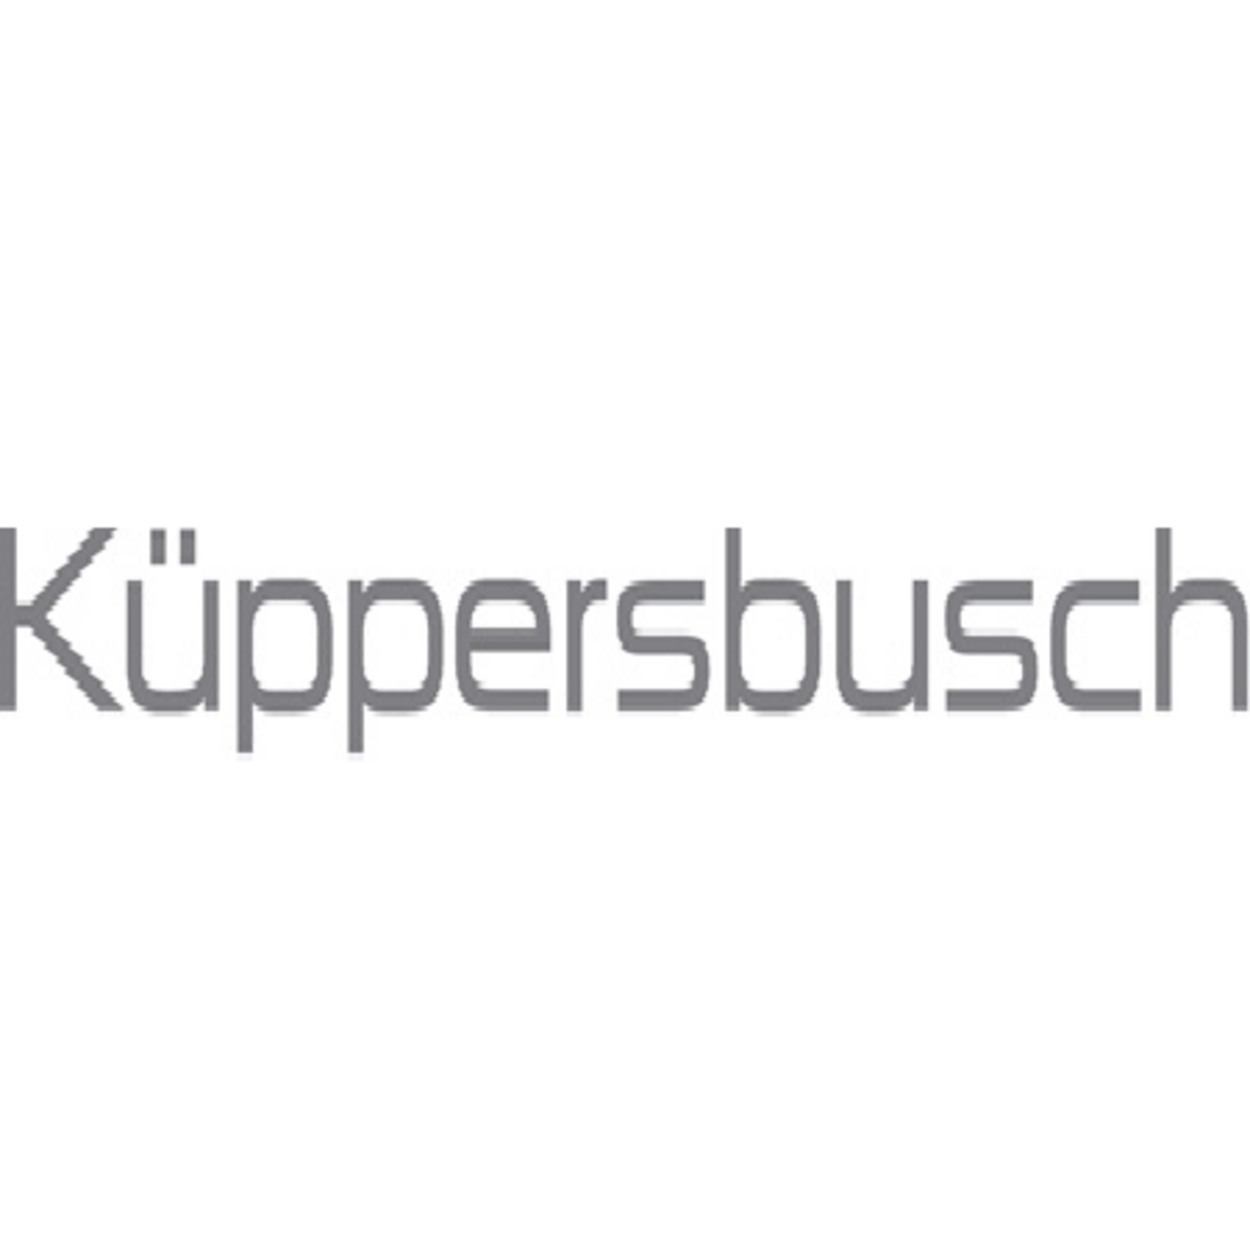 kueppersbusch logo bei Elku GmbH in Unterhaching